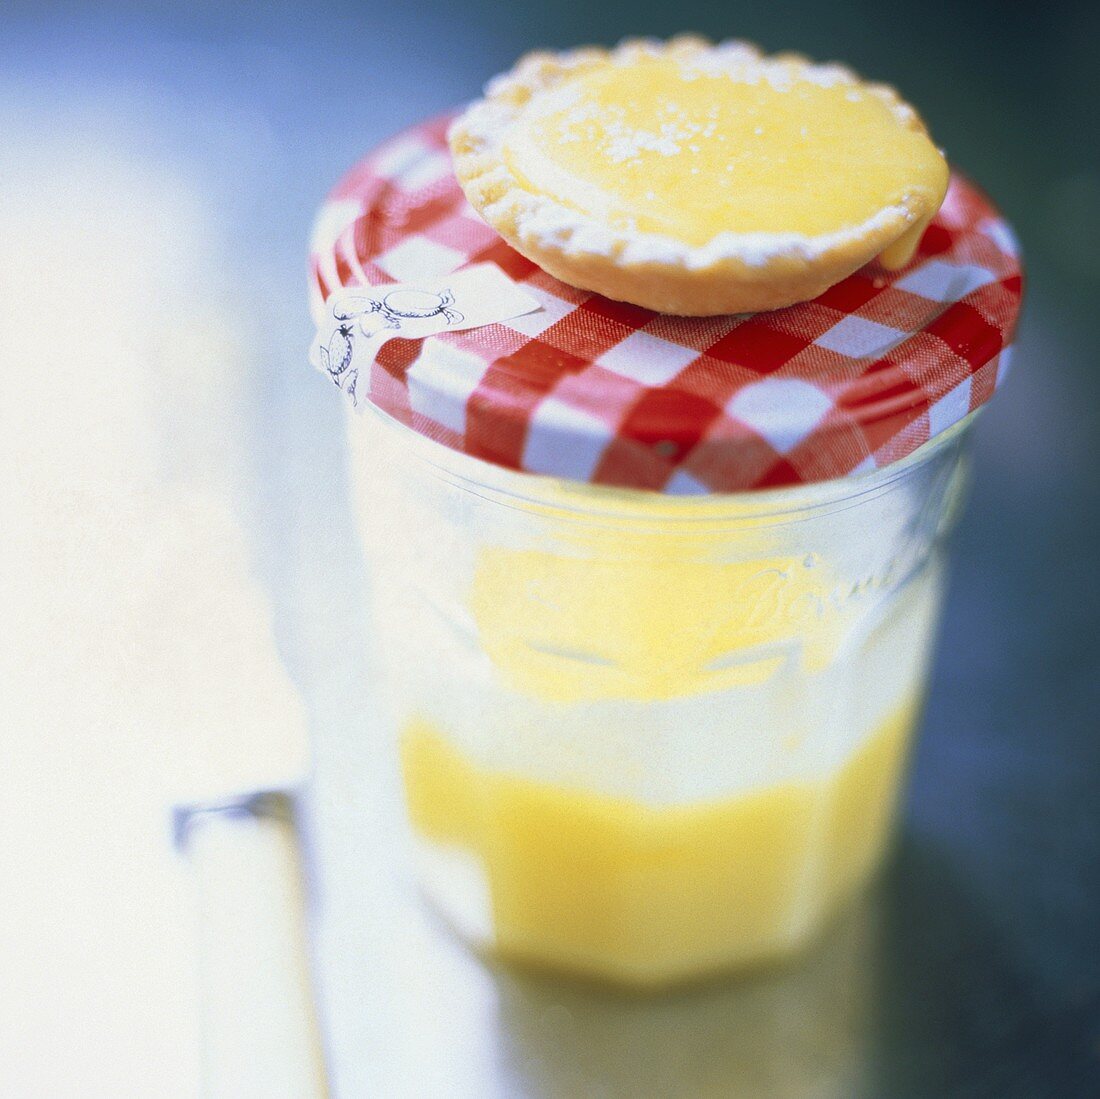 Zitronentartelett auf einem Einmachglas